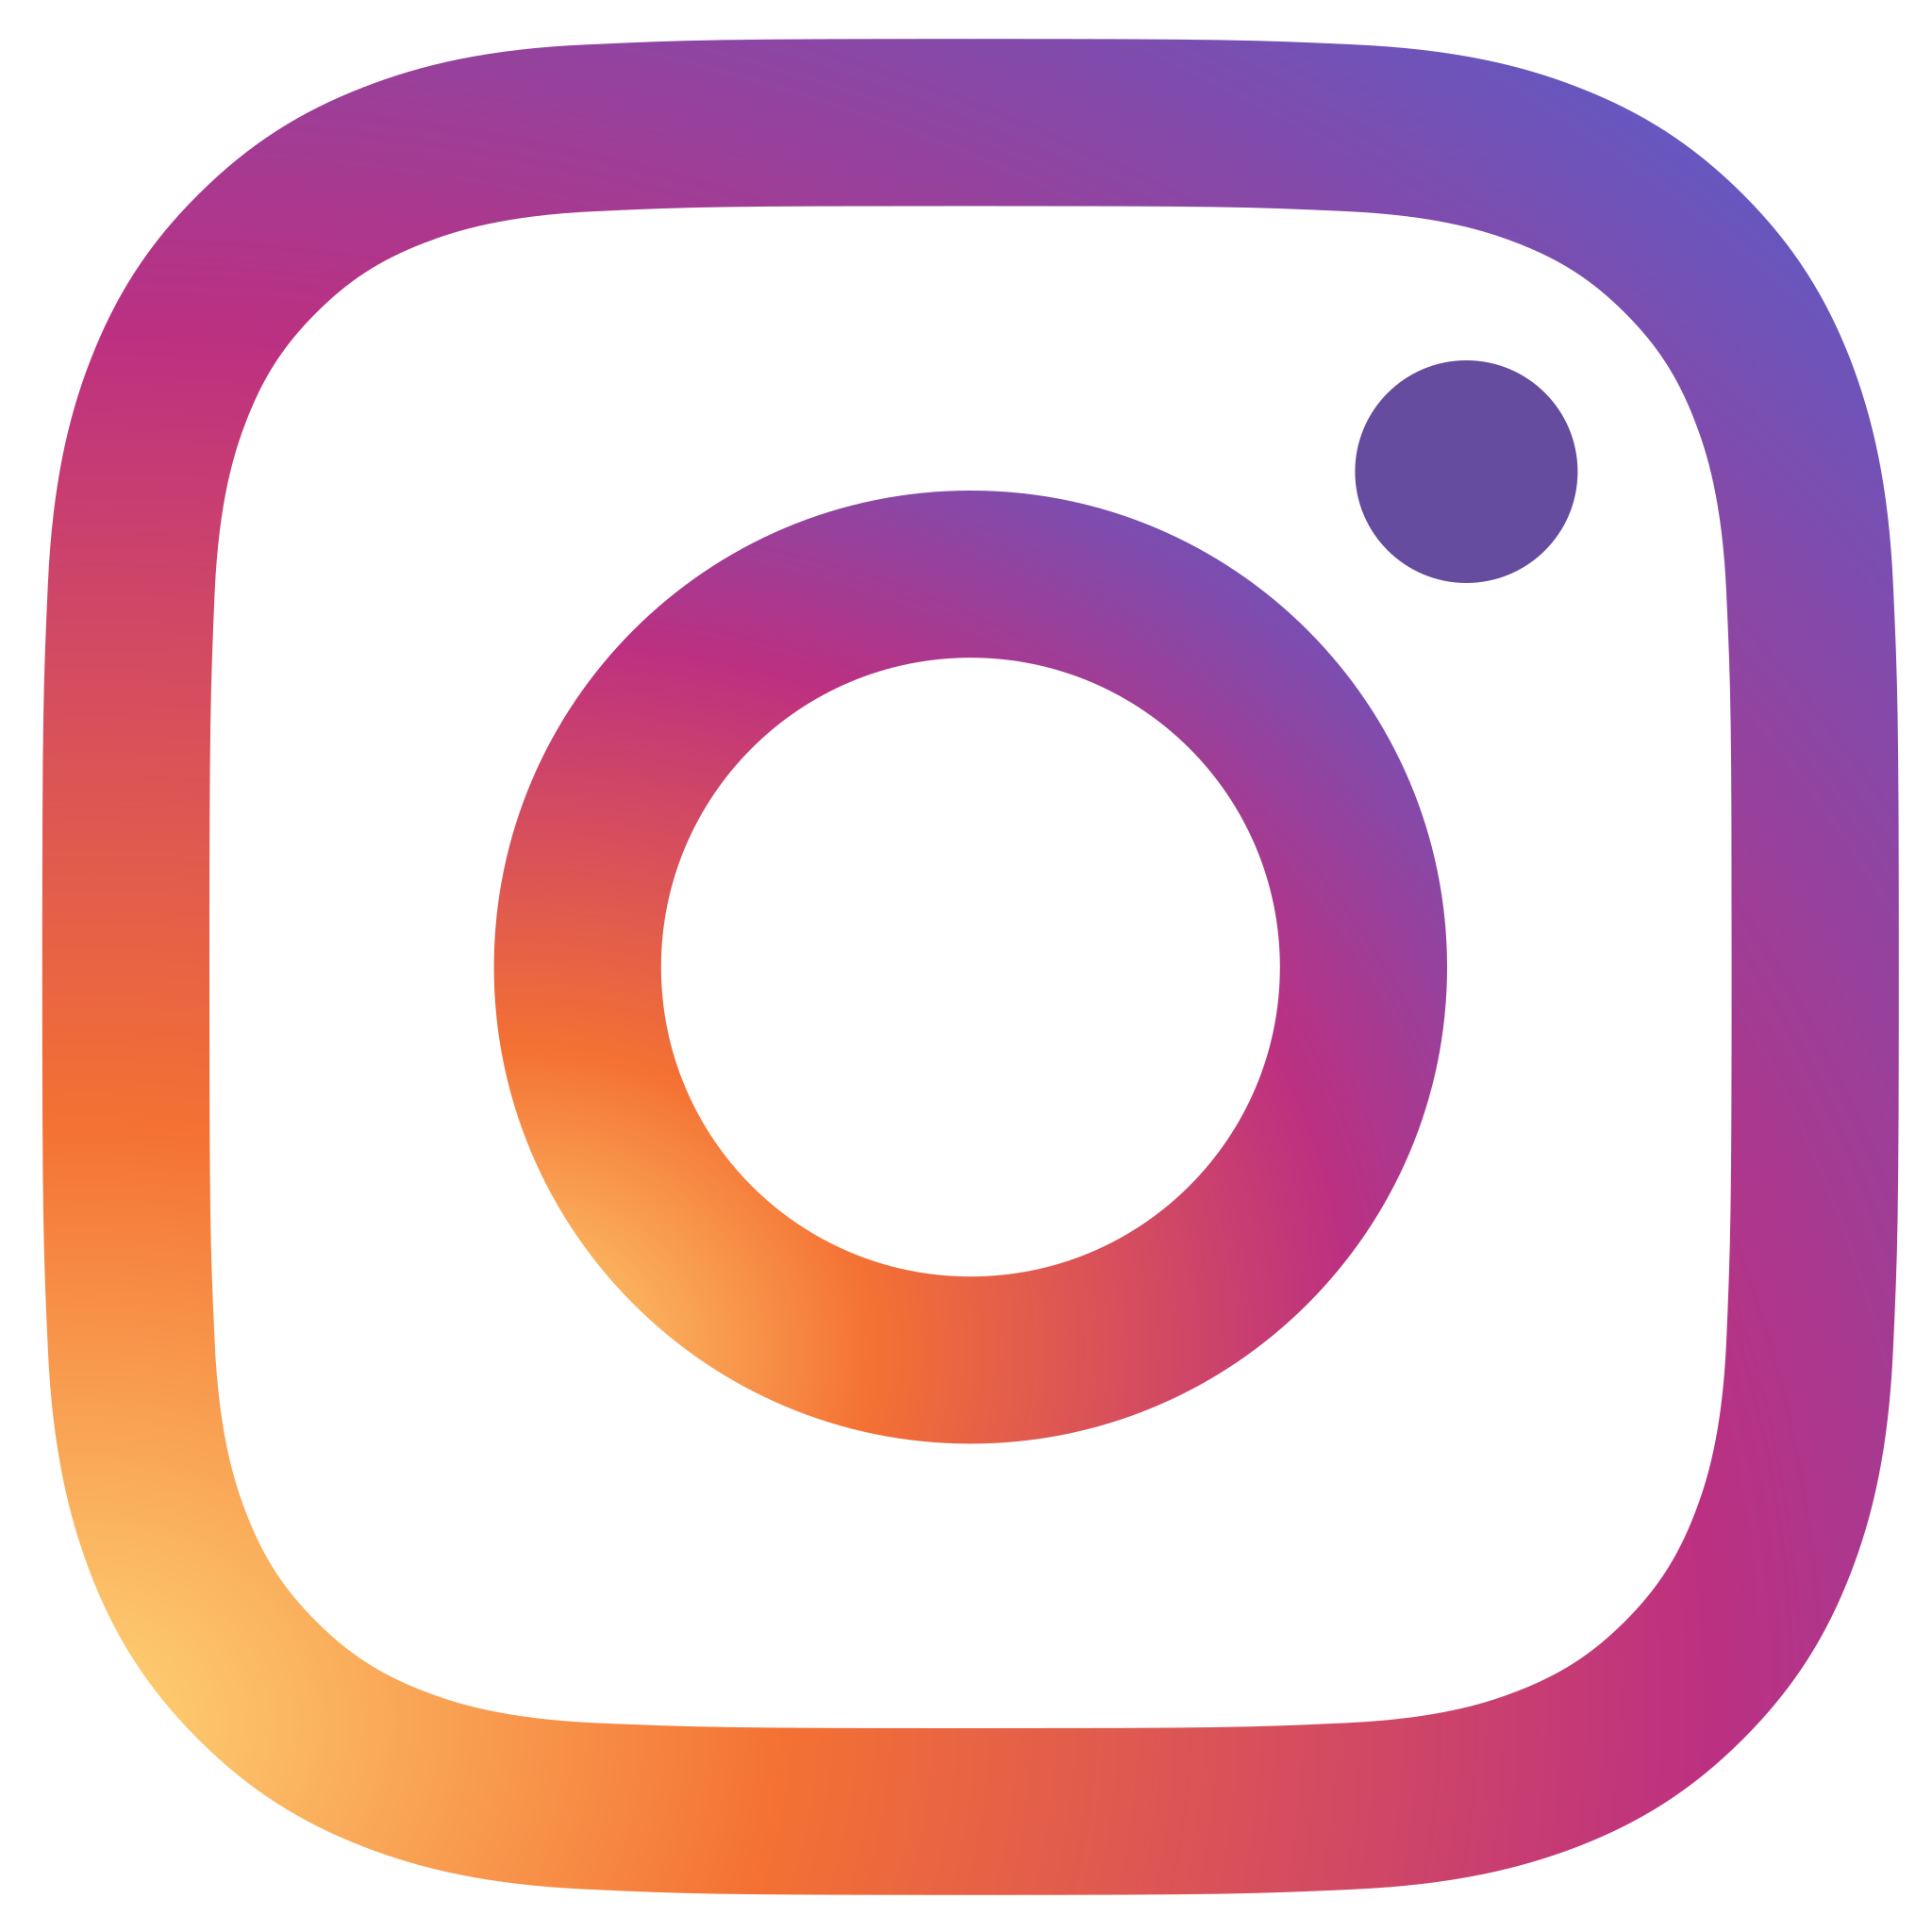 Logo-Instagram.png